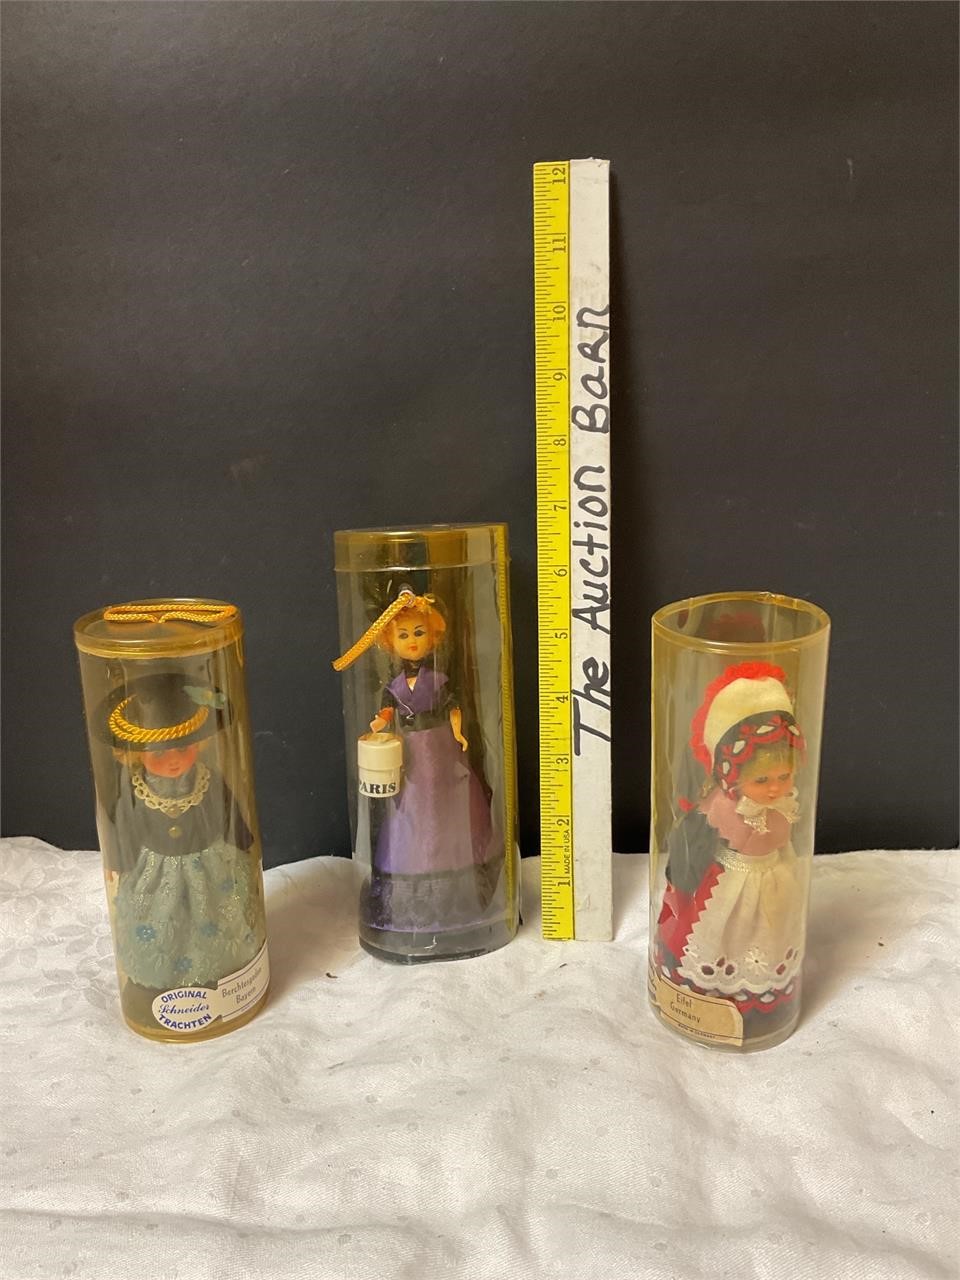 3 original Schneider trachten dolls